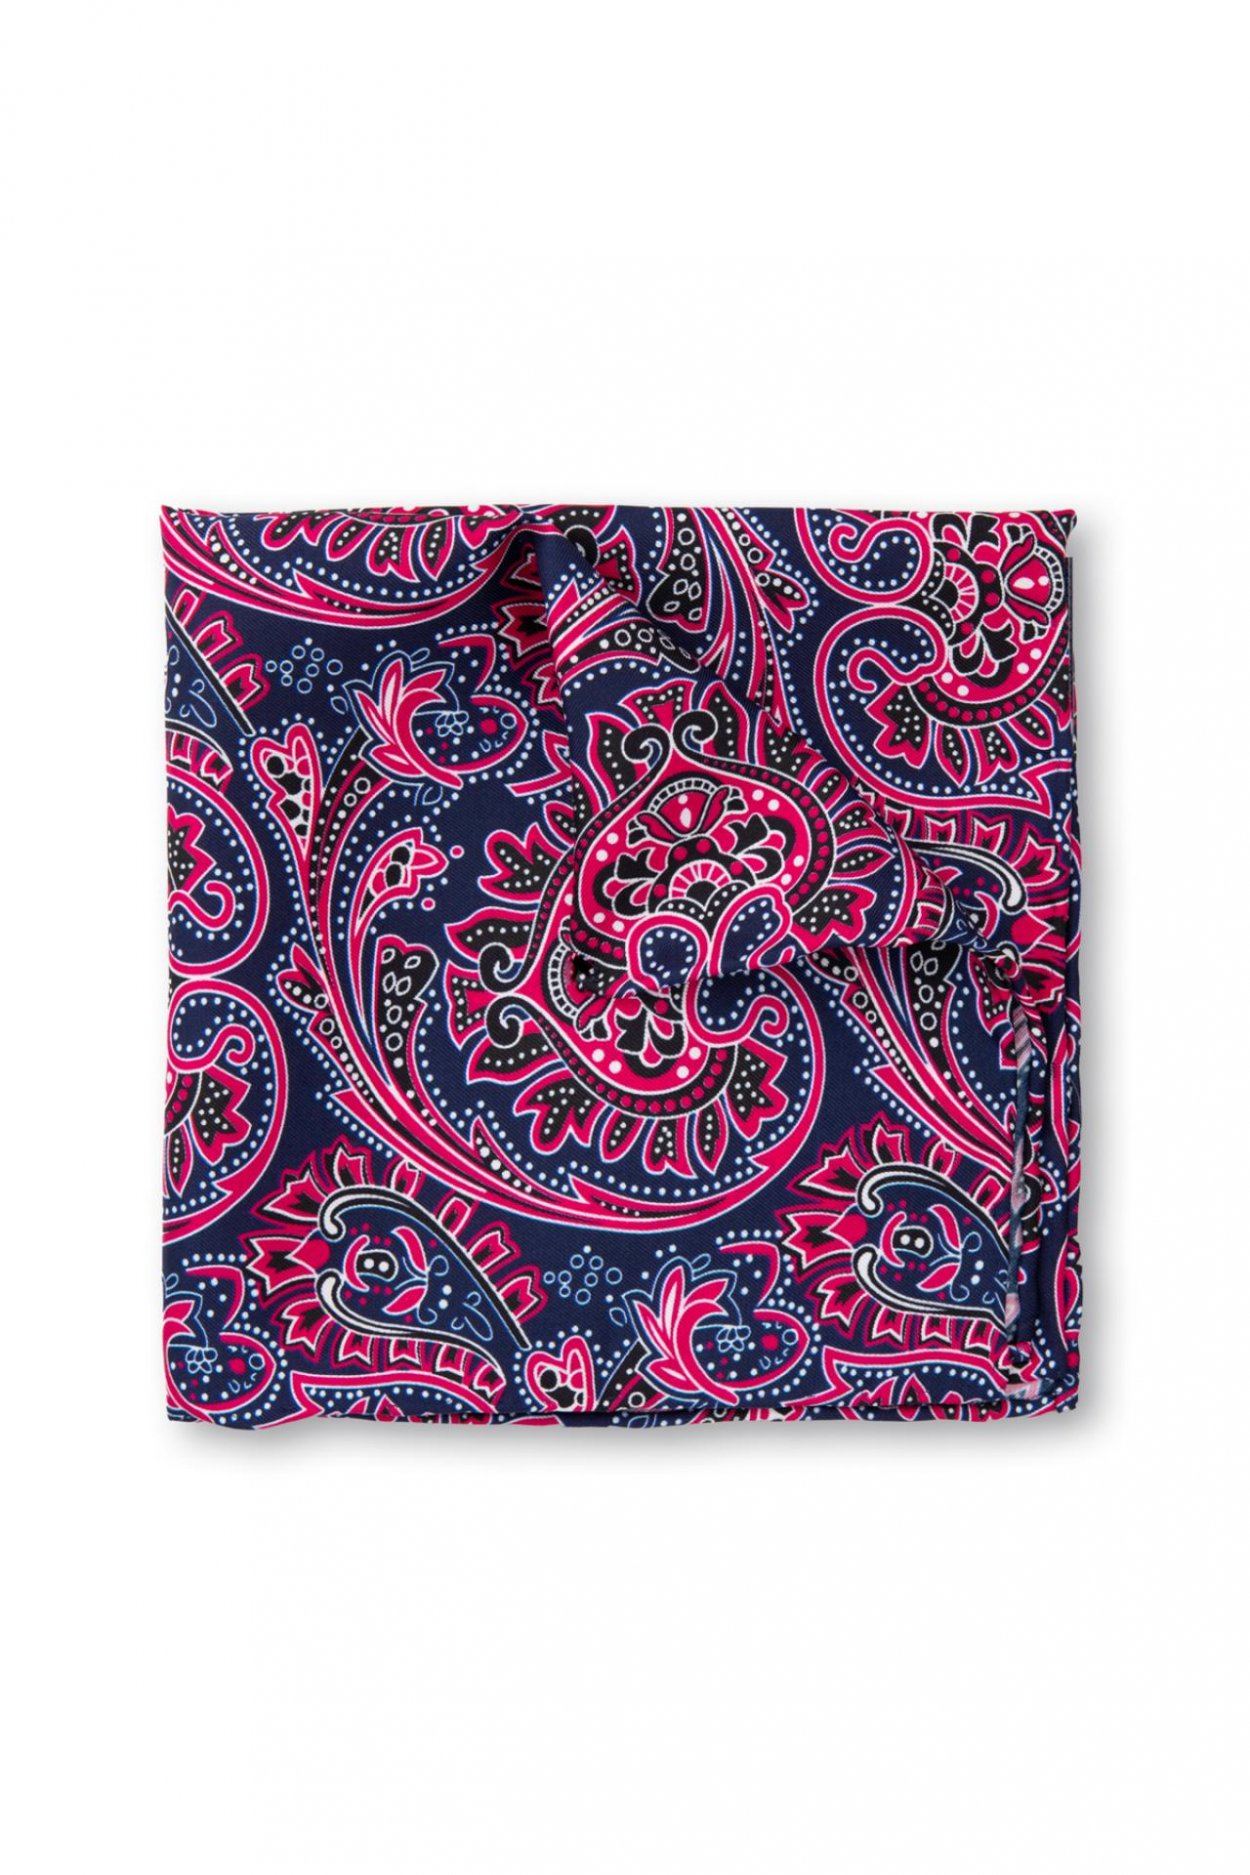 Růžový hedvábný kapesníček se vzorem